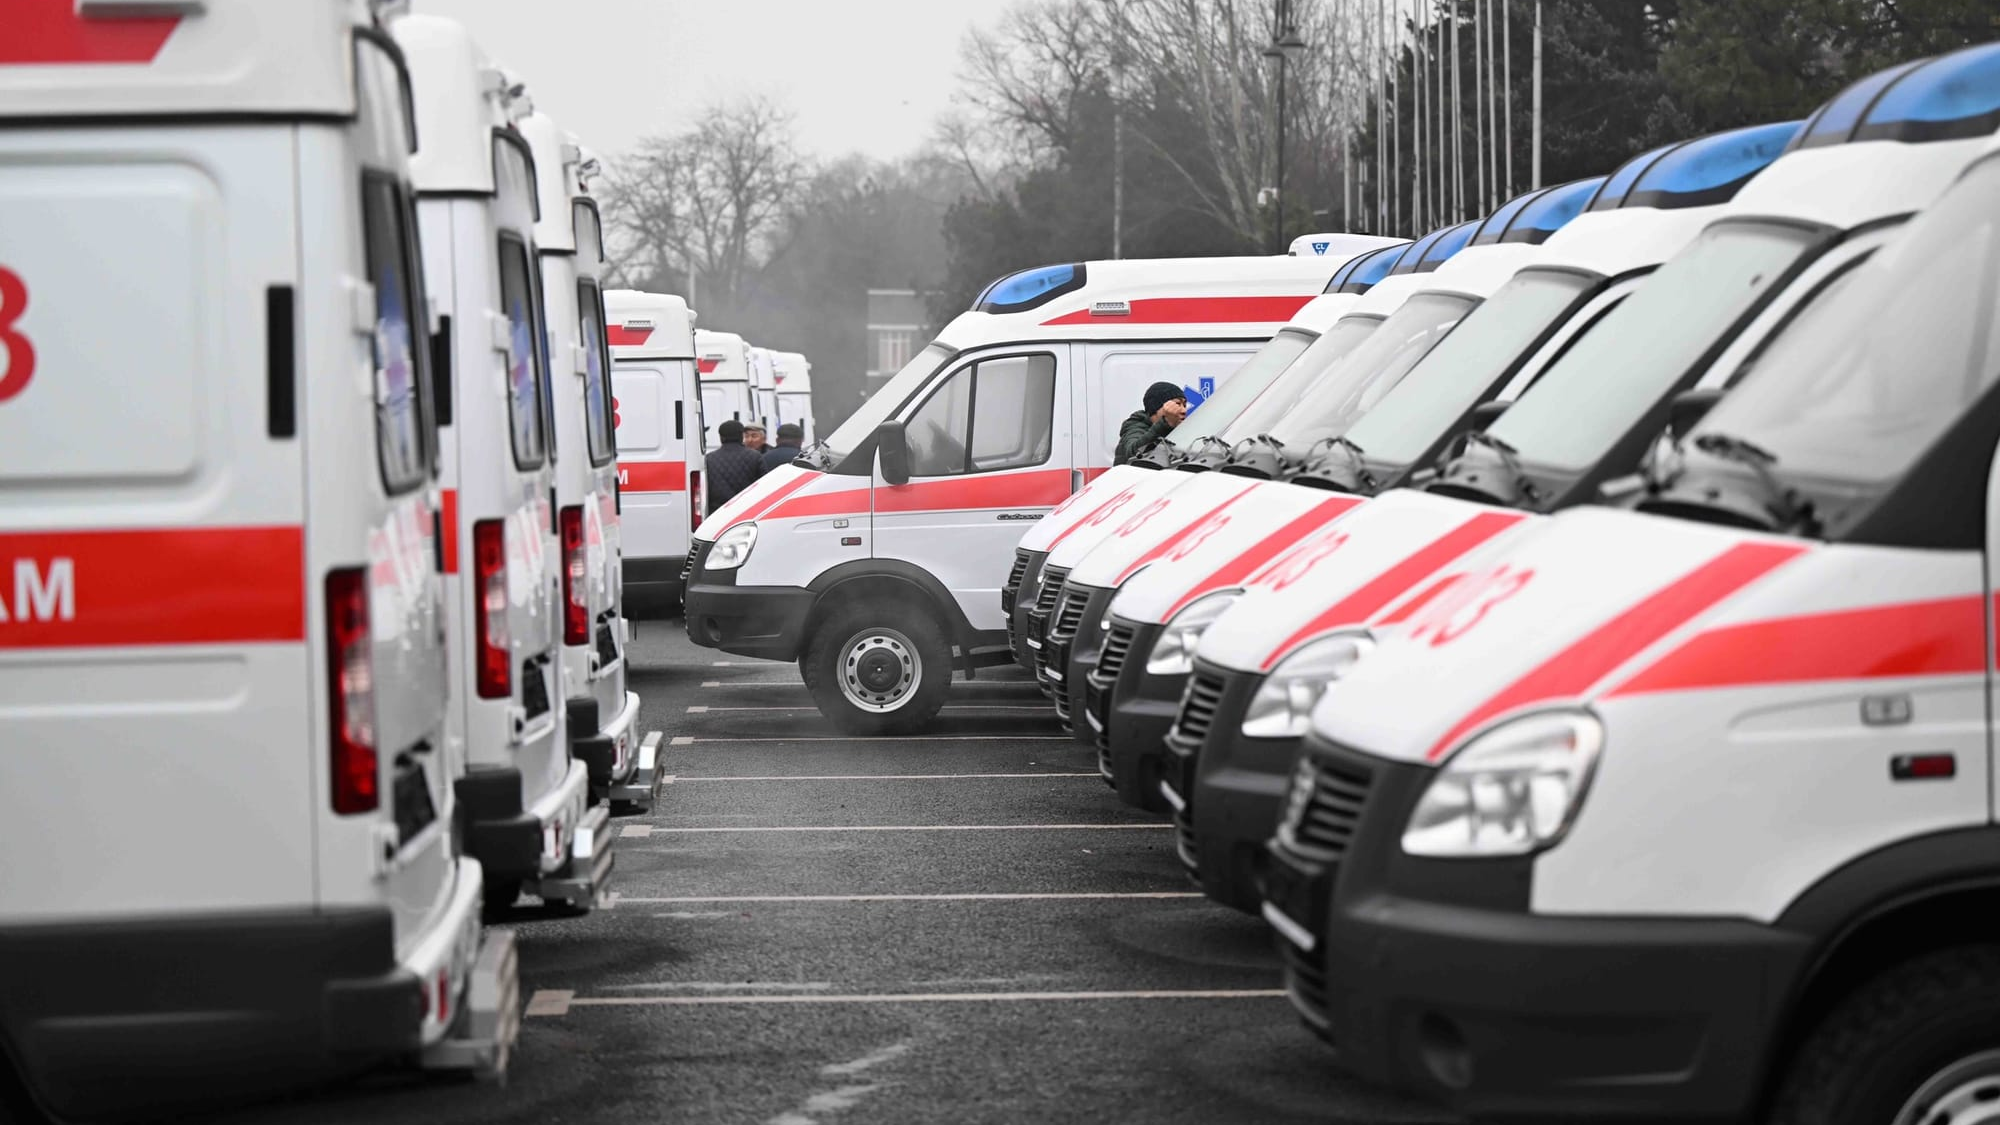 Кыргызстан попросил у ЕФСР $3 млн на покупку 100 машин скорой помощи